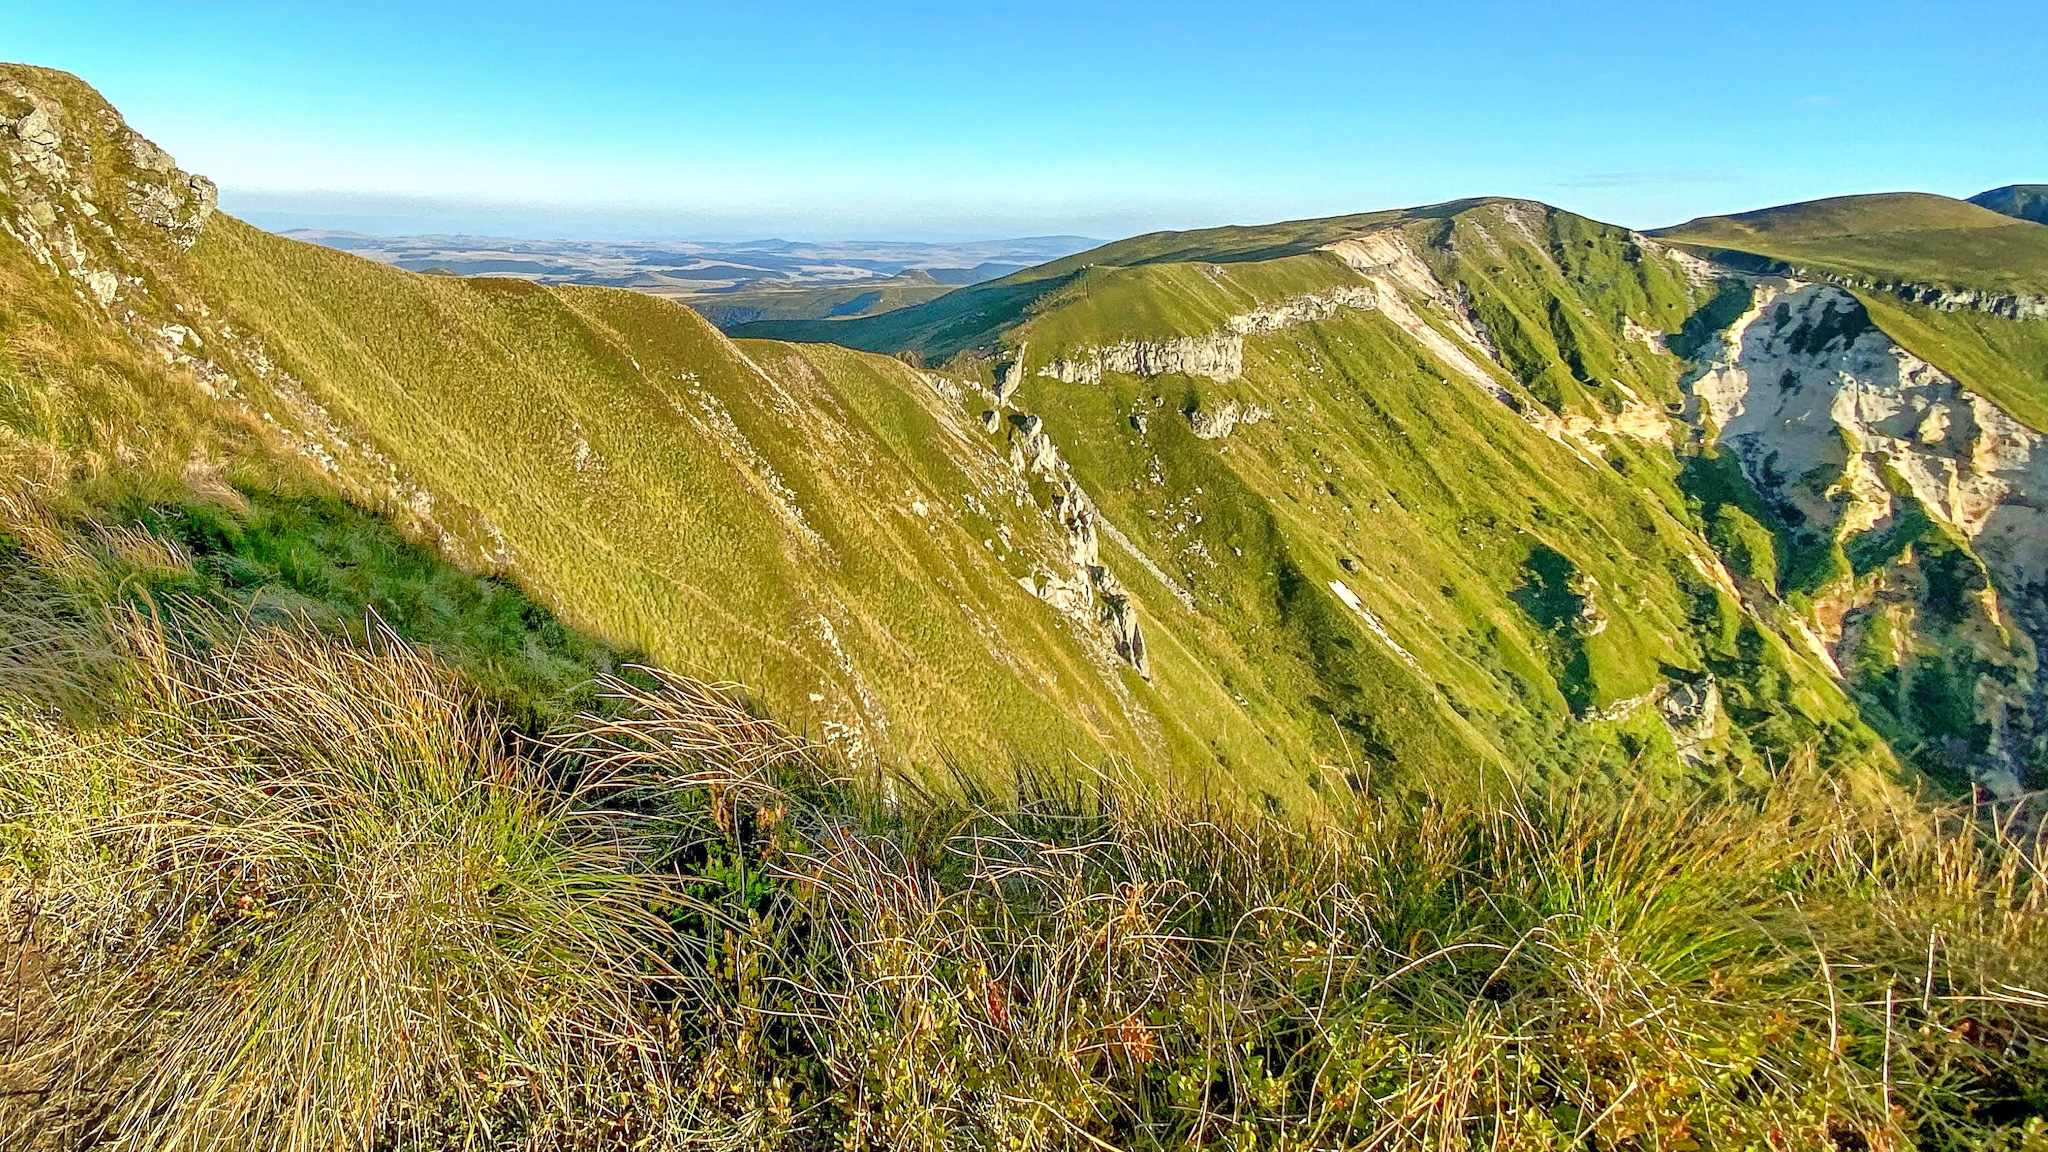 Summit of the Roc de Cuzeau, view of the Puy des Crebasses